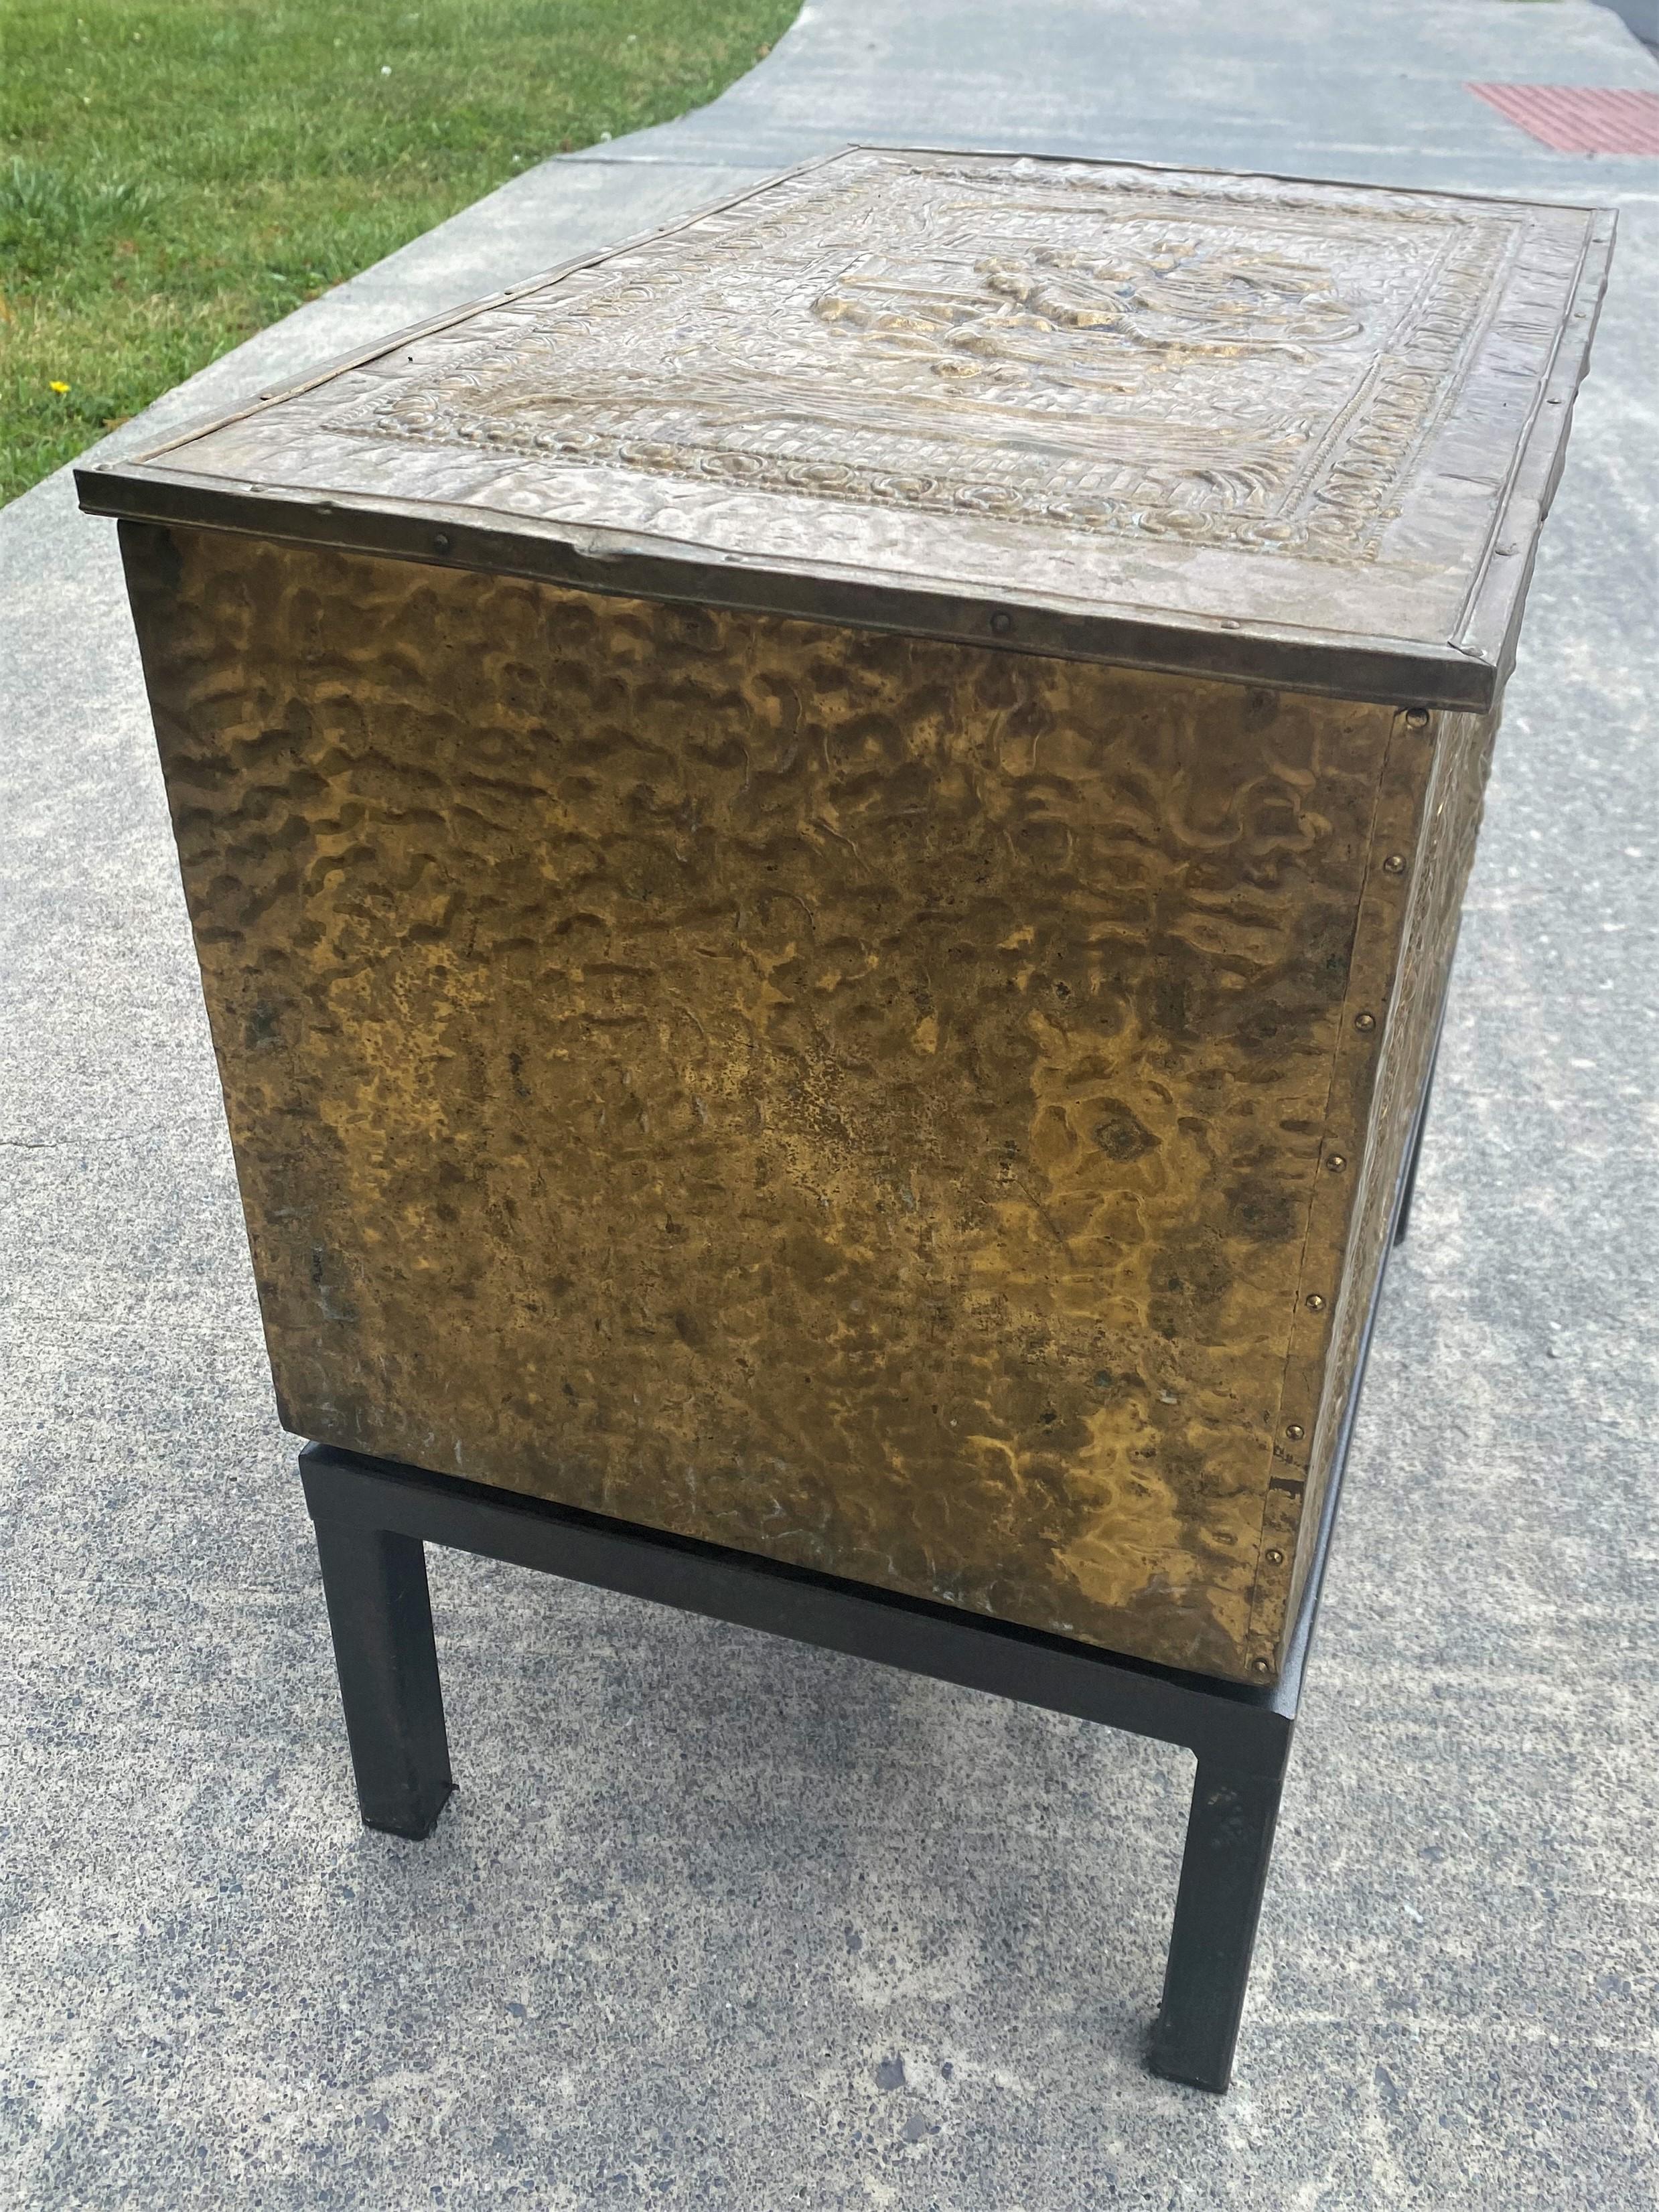 metal kindling box with lid